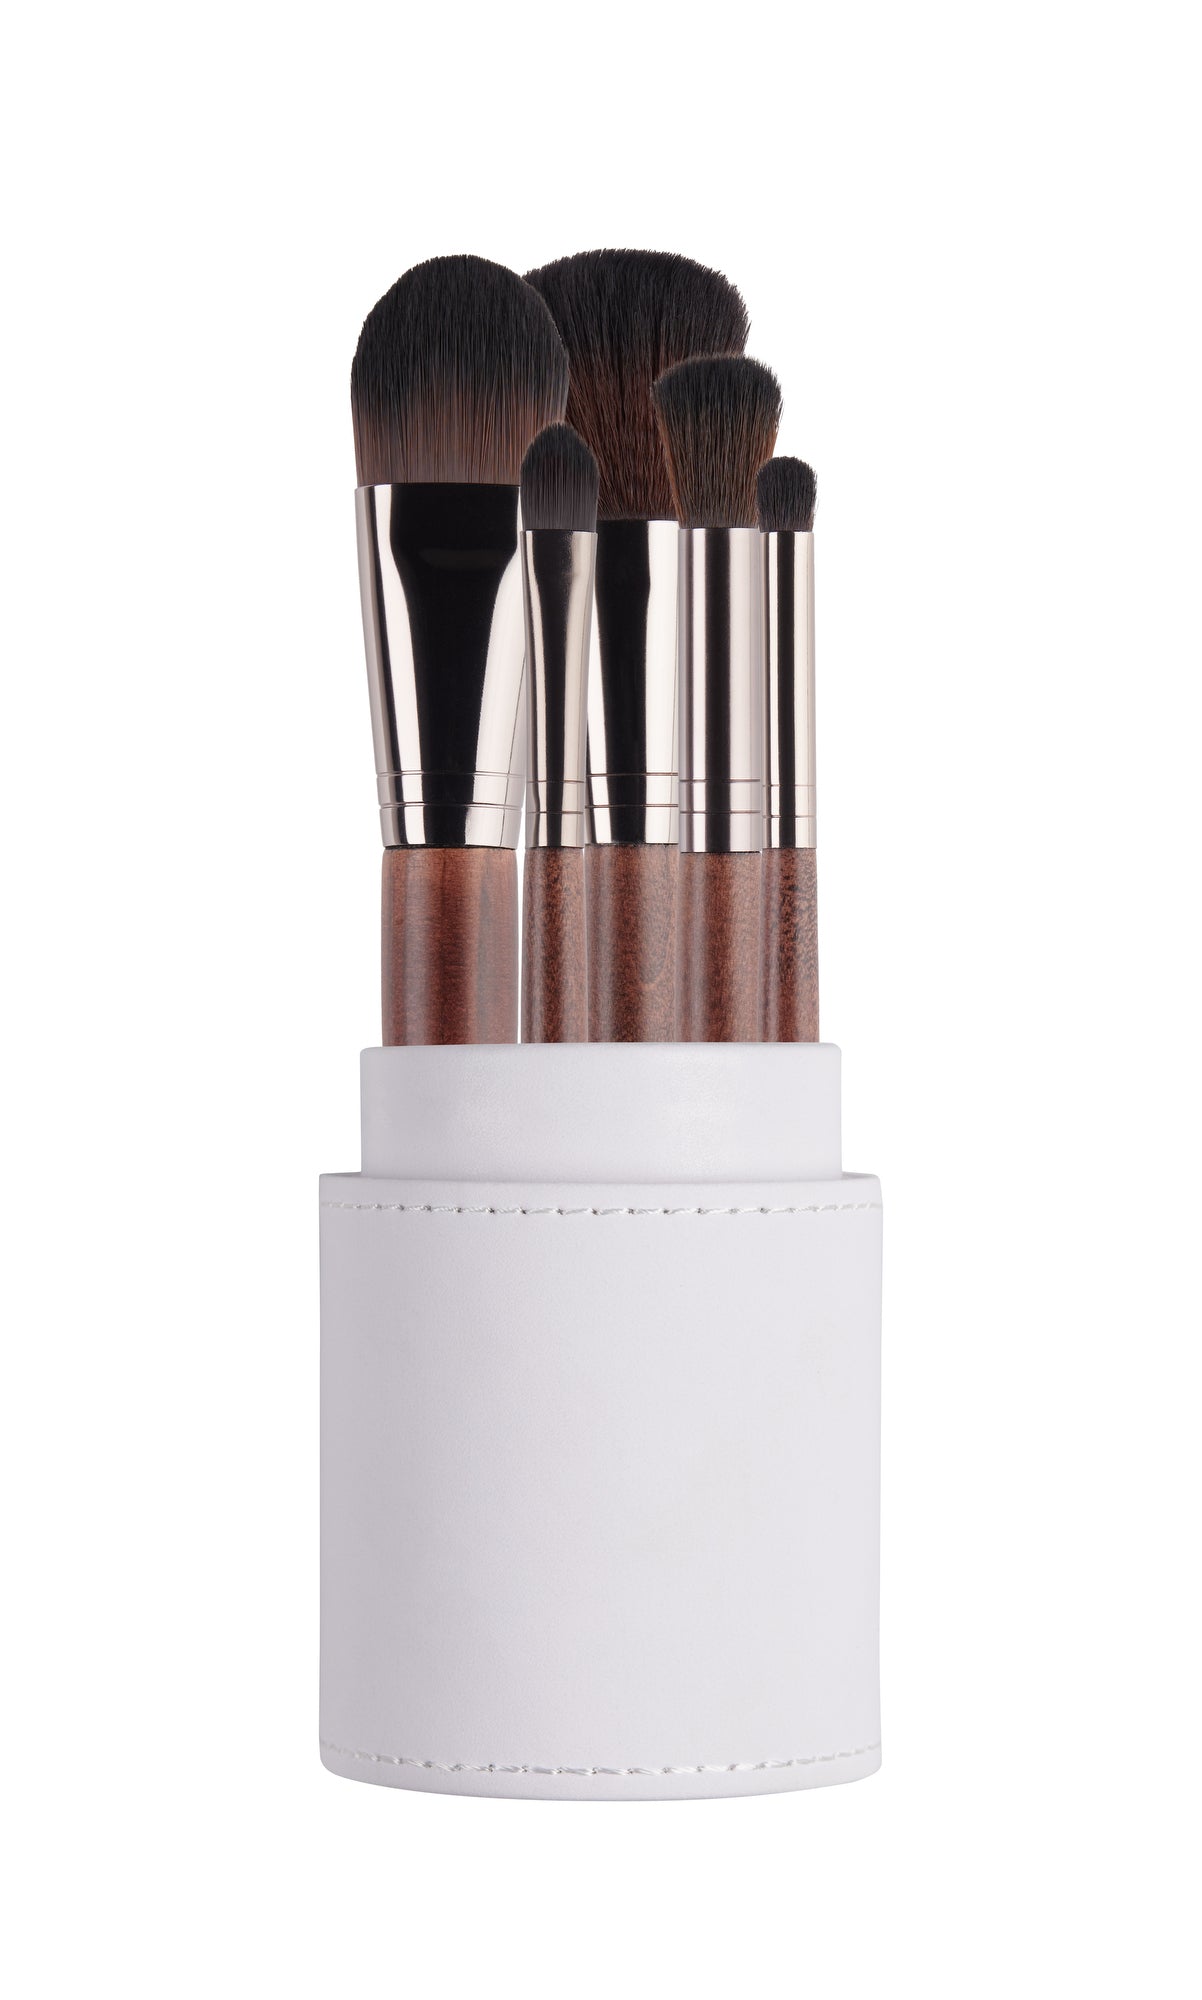 Brushean Makeup Brush Set